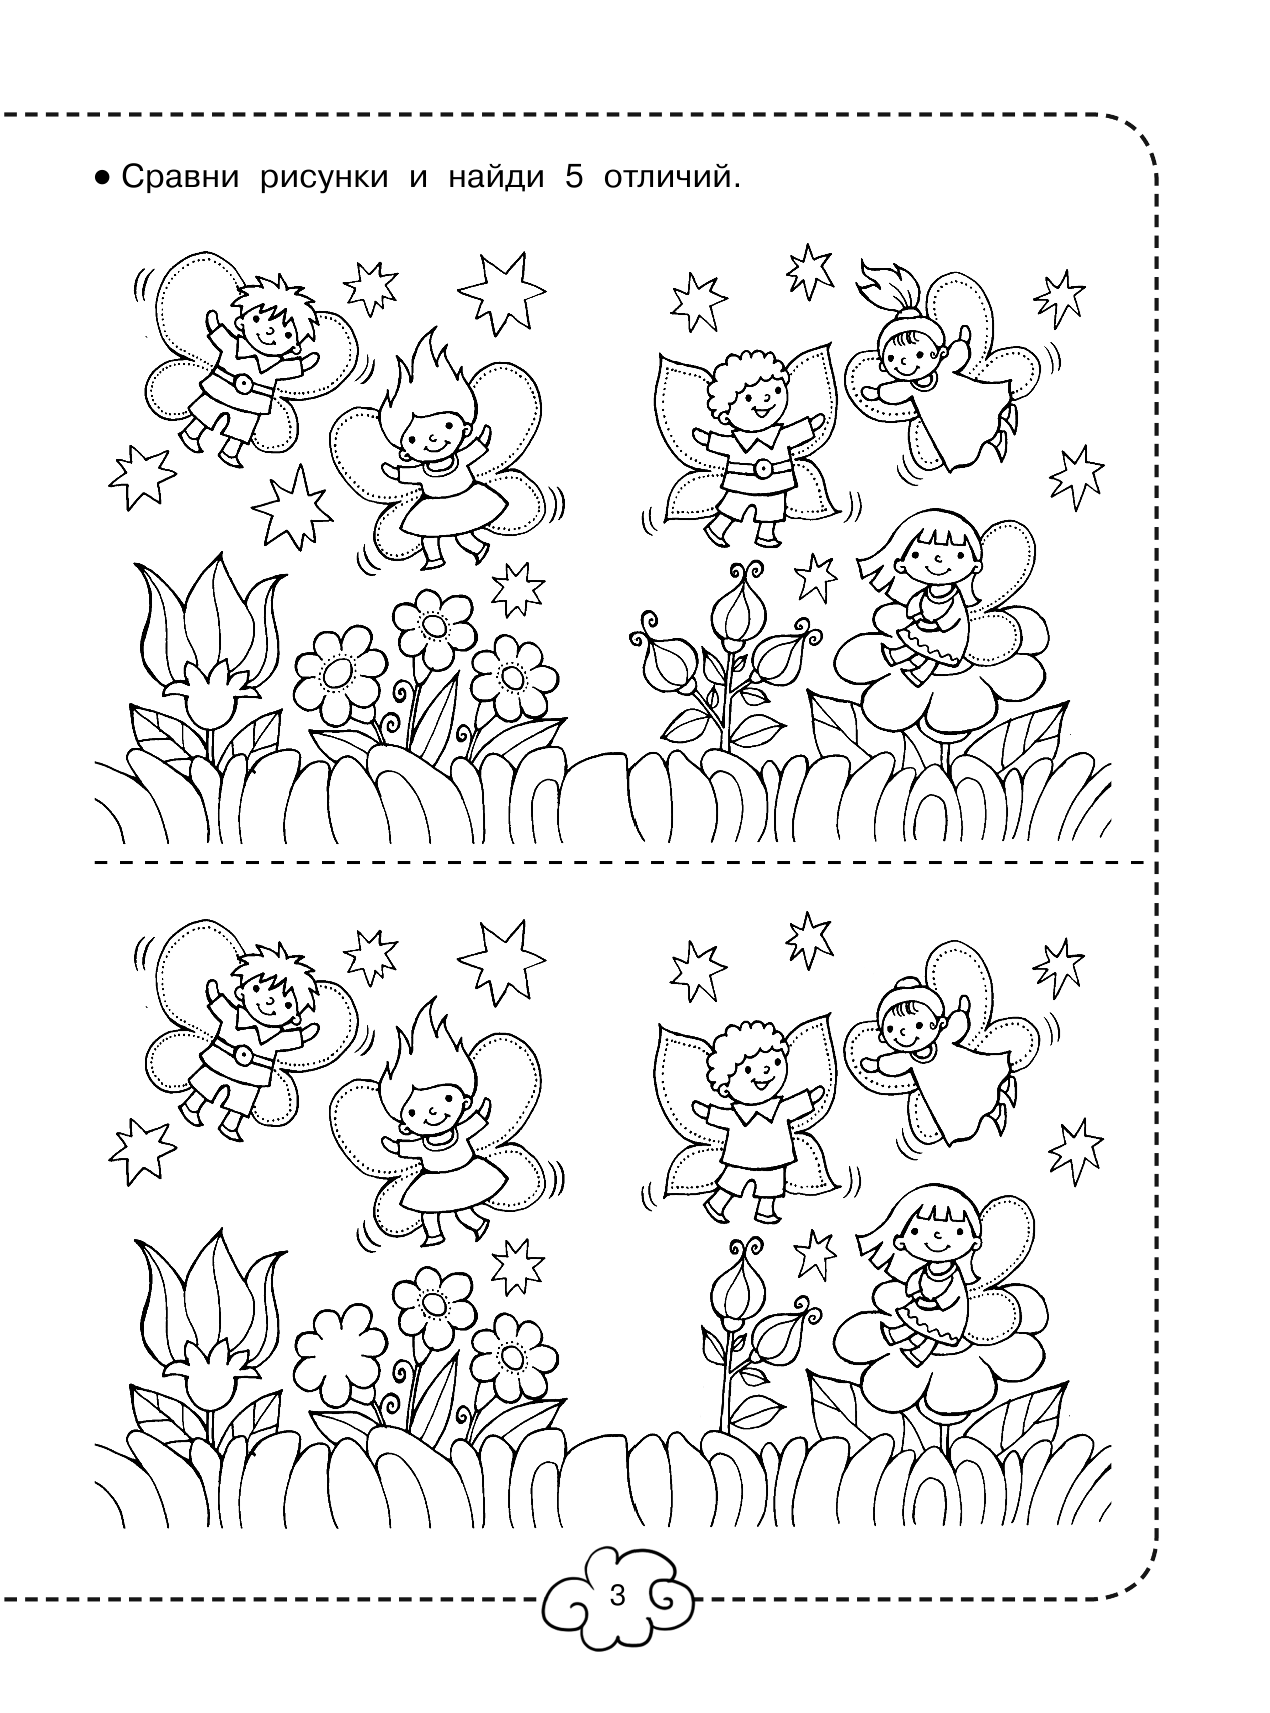 Дмитриева Валентина Геннадьевна Большая книга головоломок для малышей с наклейками - страница 4